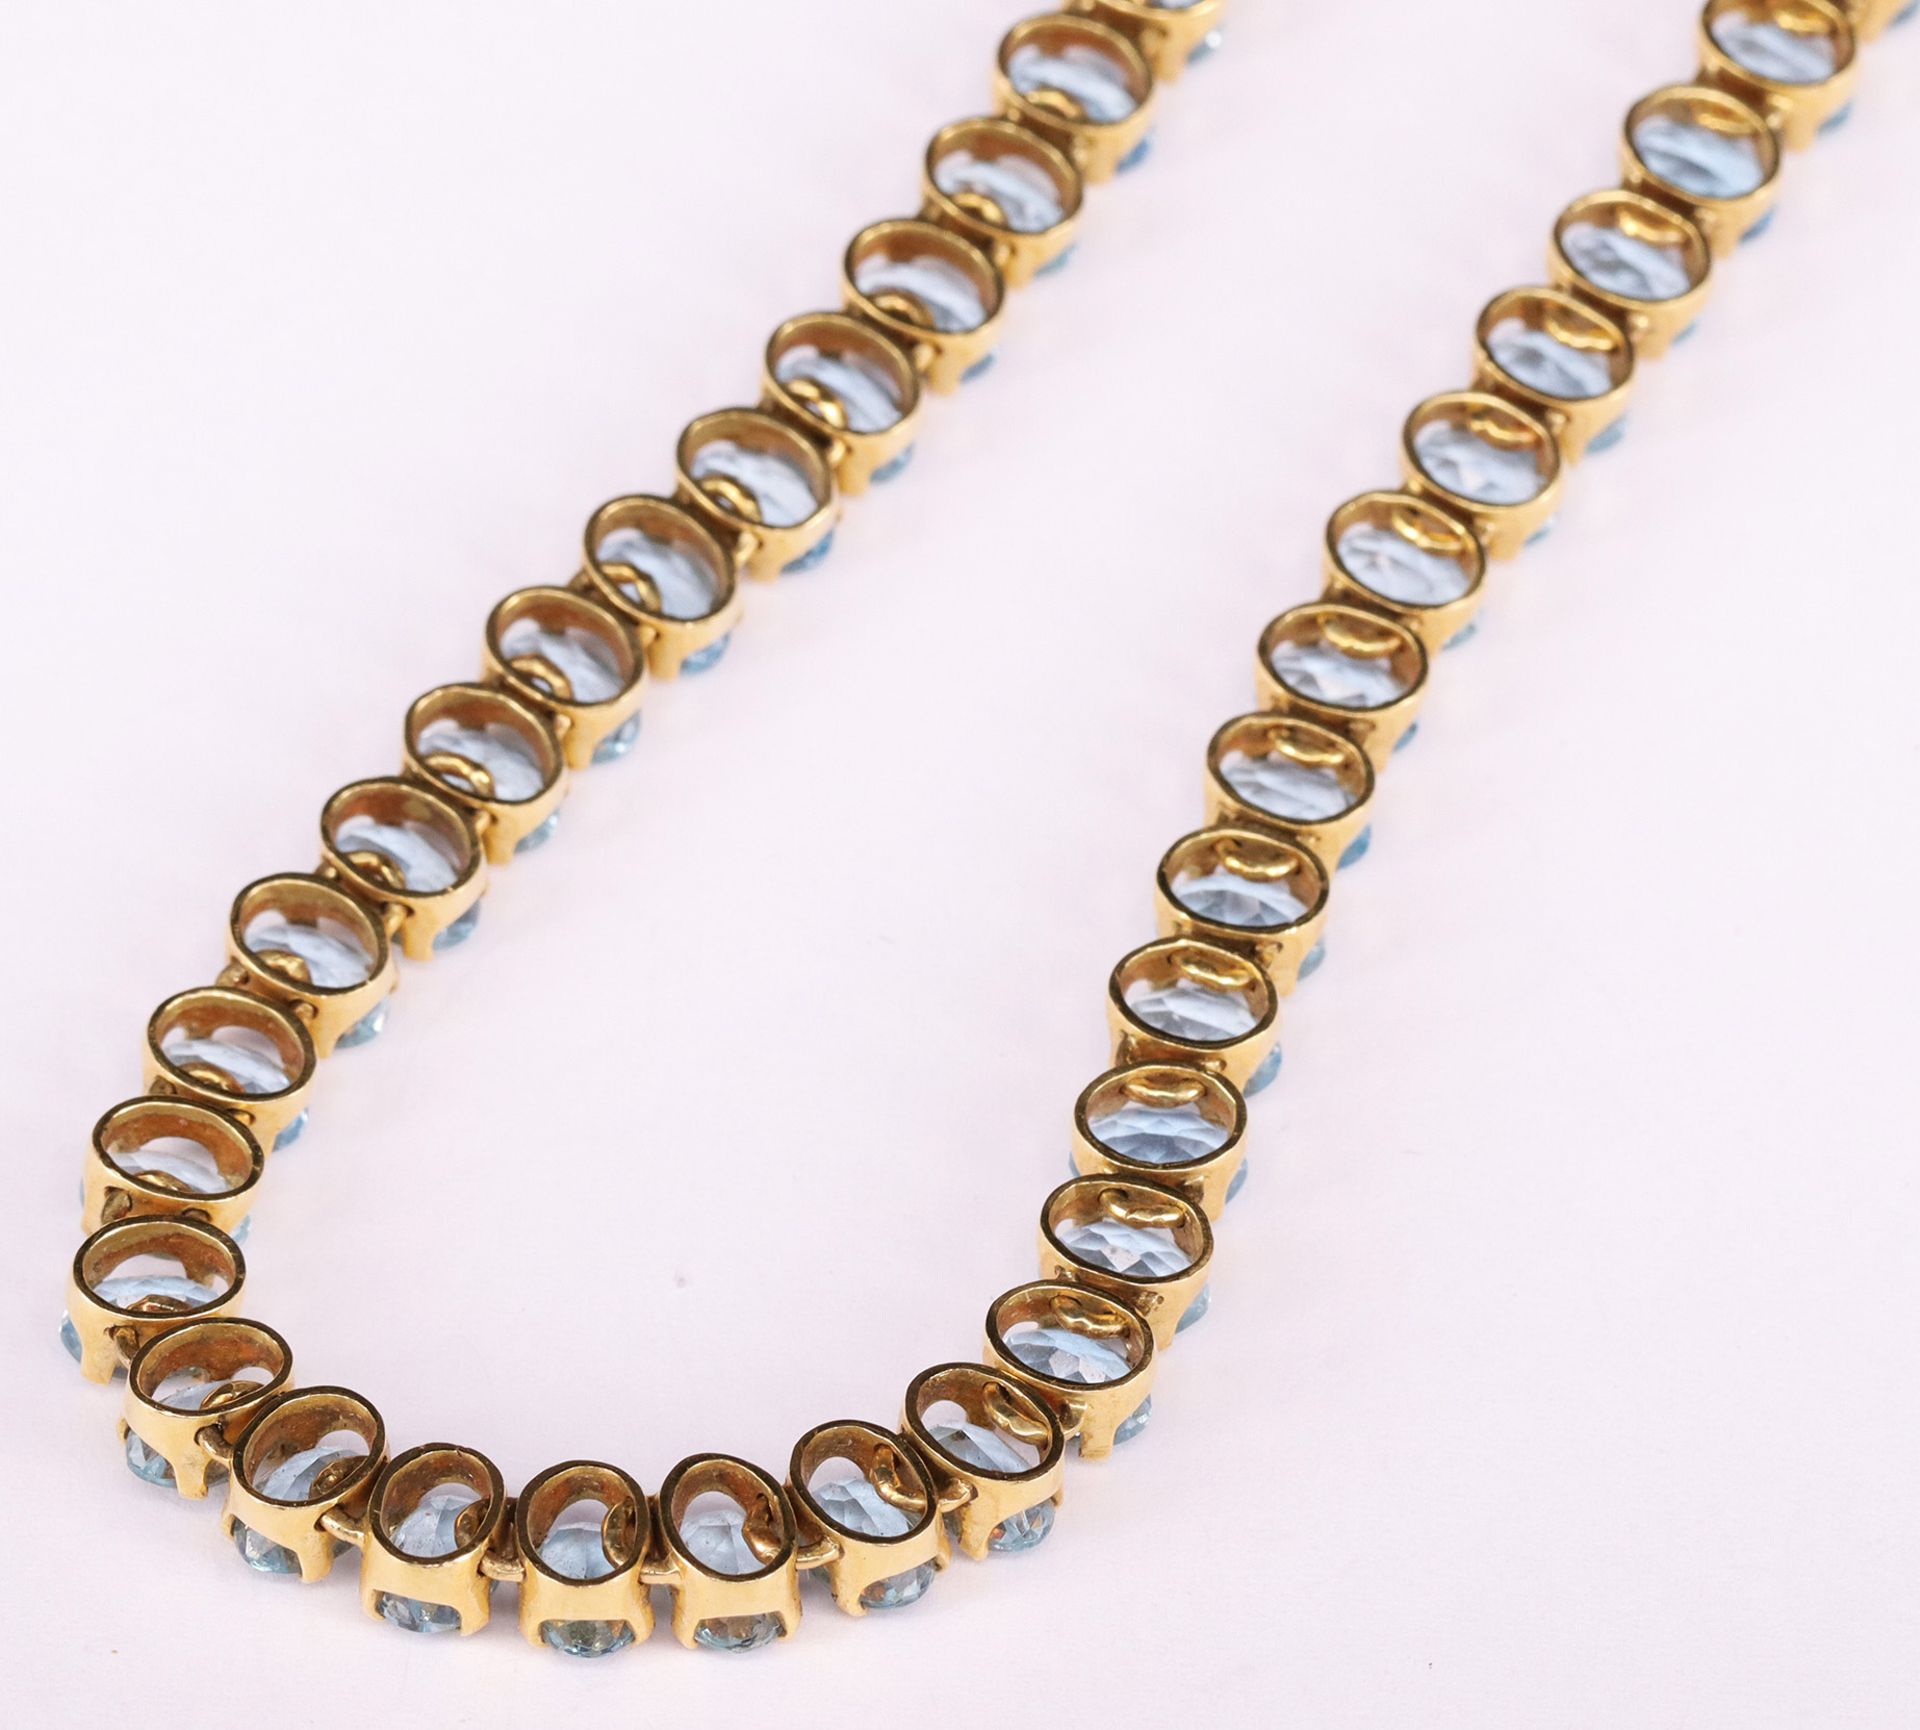 Kette, 750er GG, mit hellblauen Saphiren, 83 Steine einzeln gefasst / Necklace, 750 gold, with light - Bild 3 aus 3